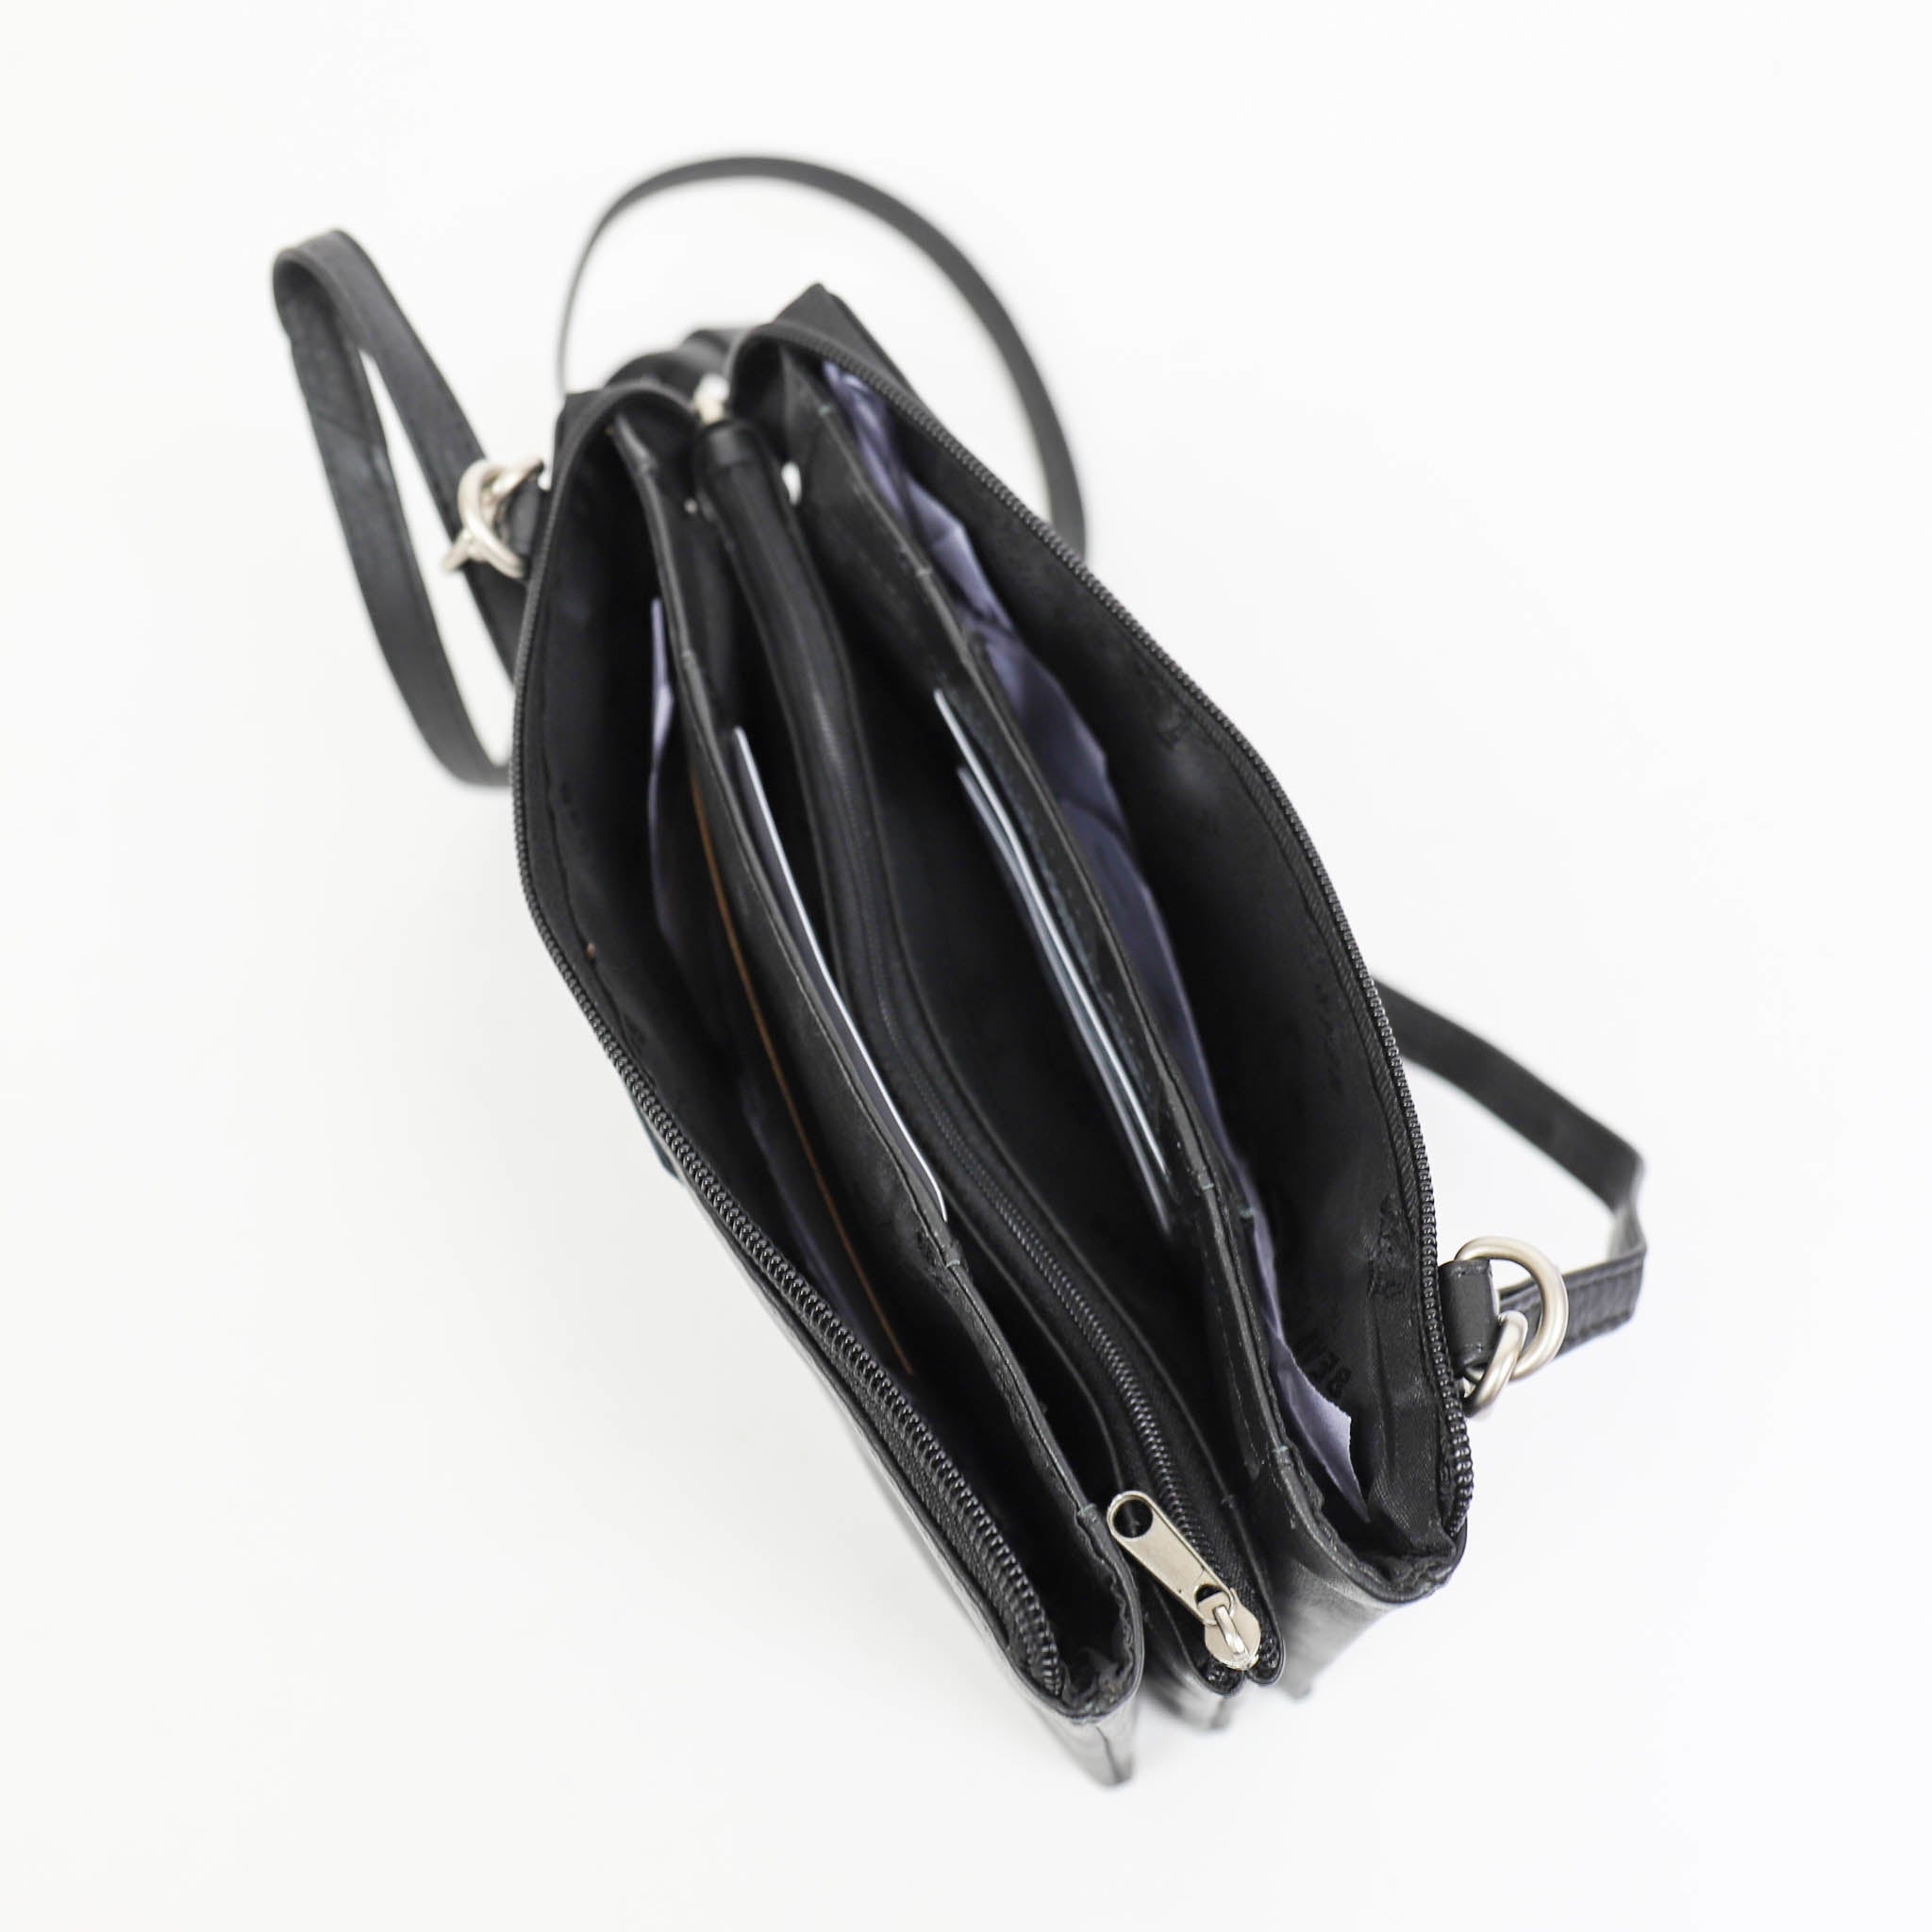 Purse bag 'Uma' black - B 30996